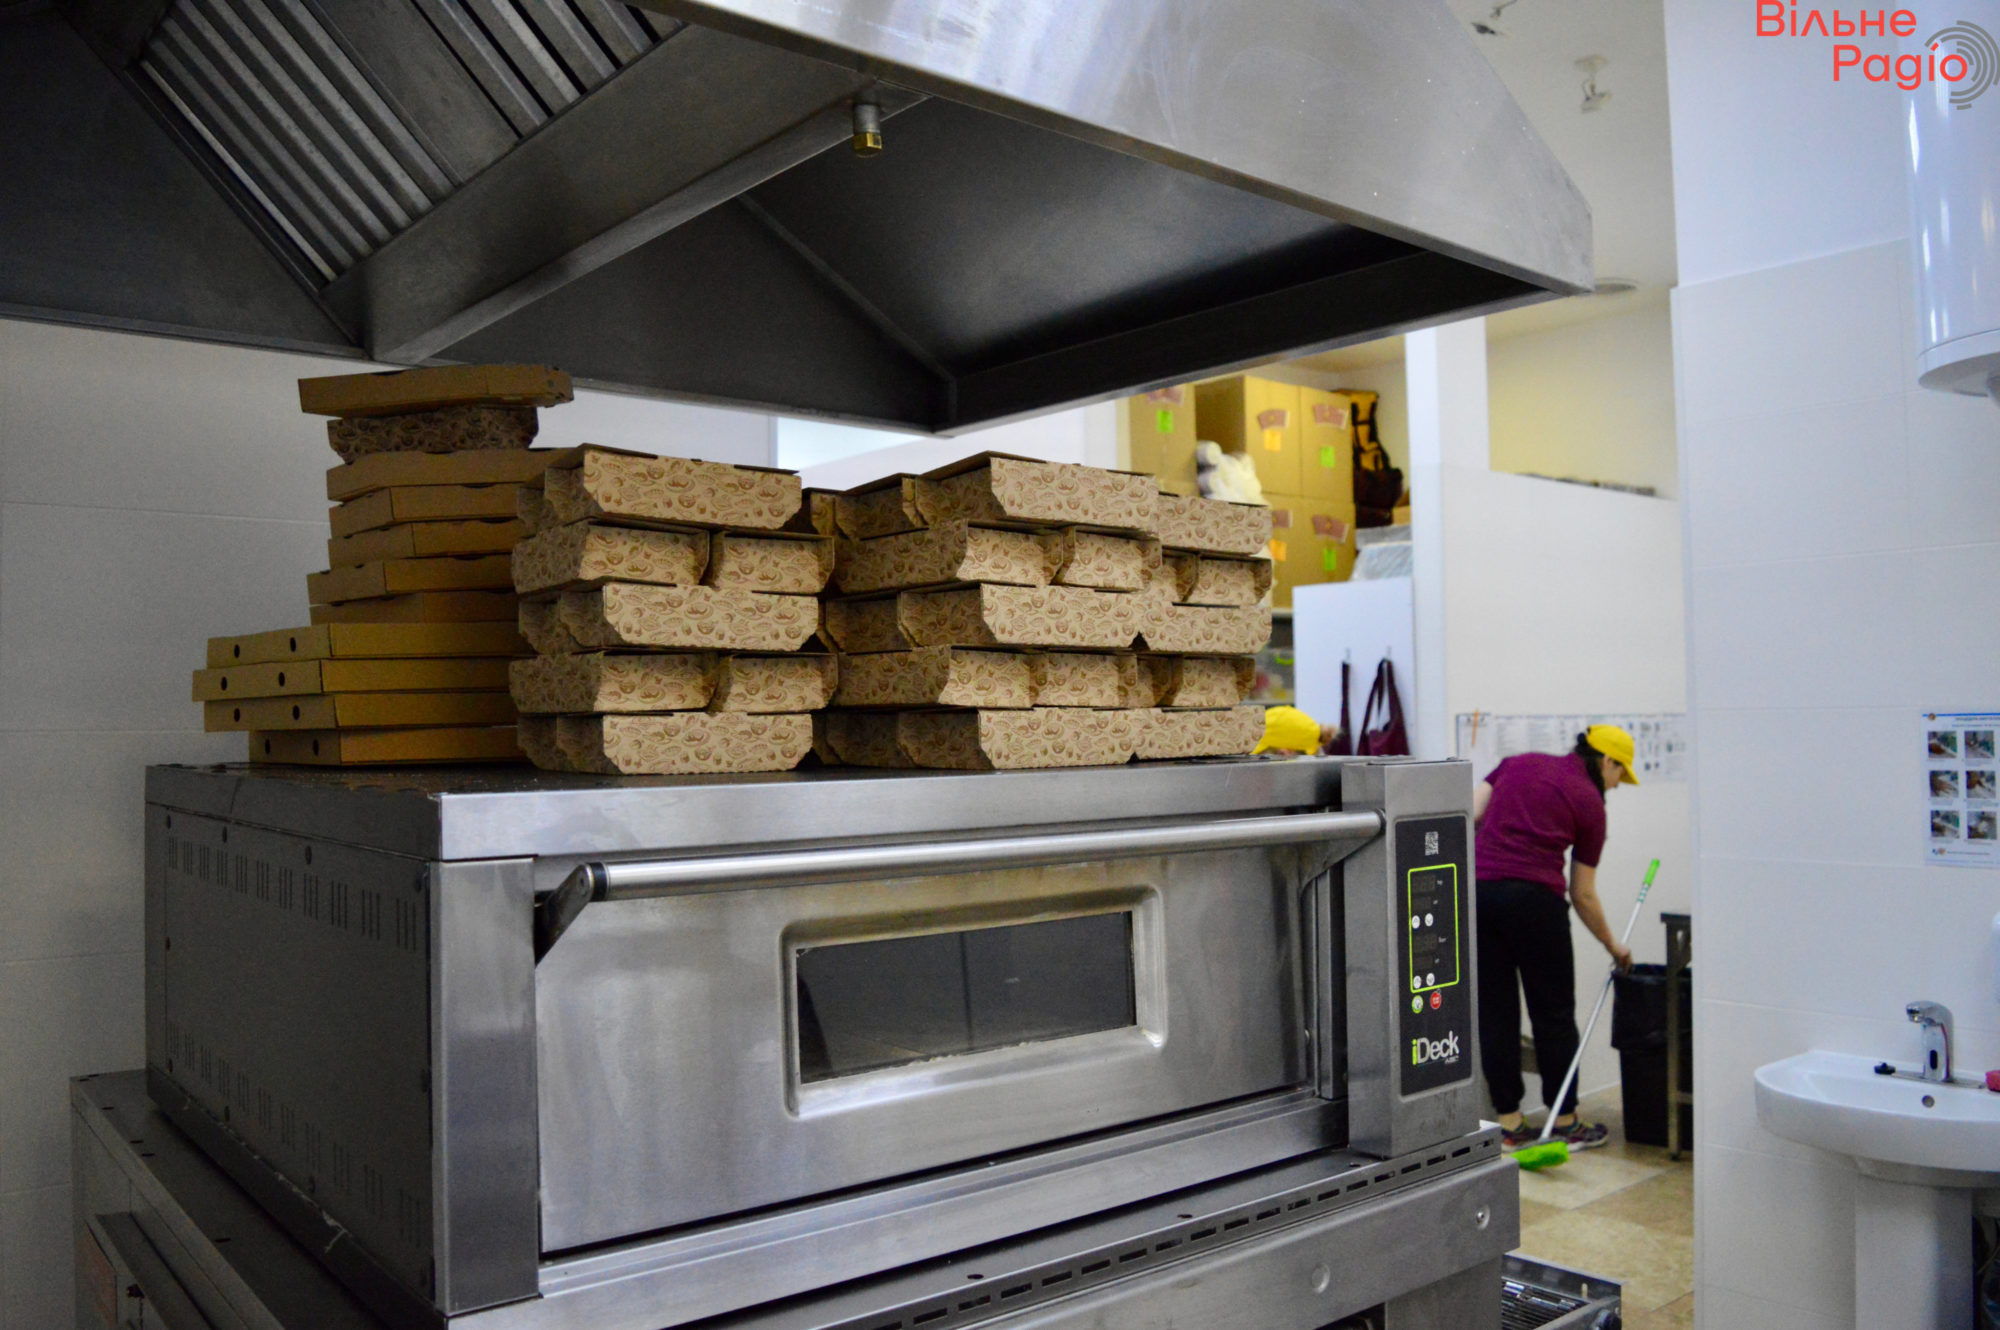 Восточная пицца в Киеве: как работает сеть, которая пекла по 1500 благотворительных пицц на Донетчине, и выдерживает тесто по 3 дня (репортаж) 10